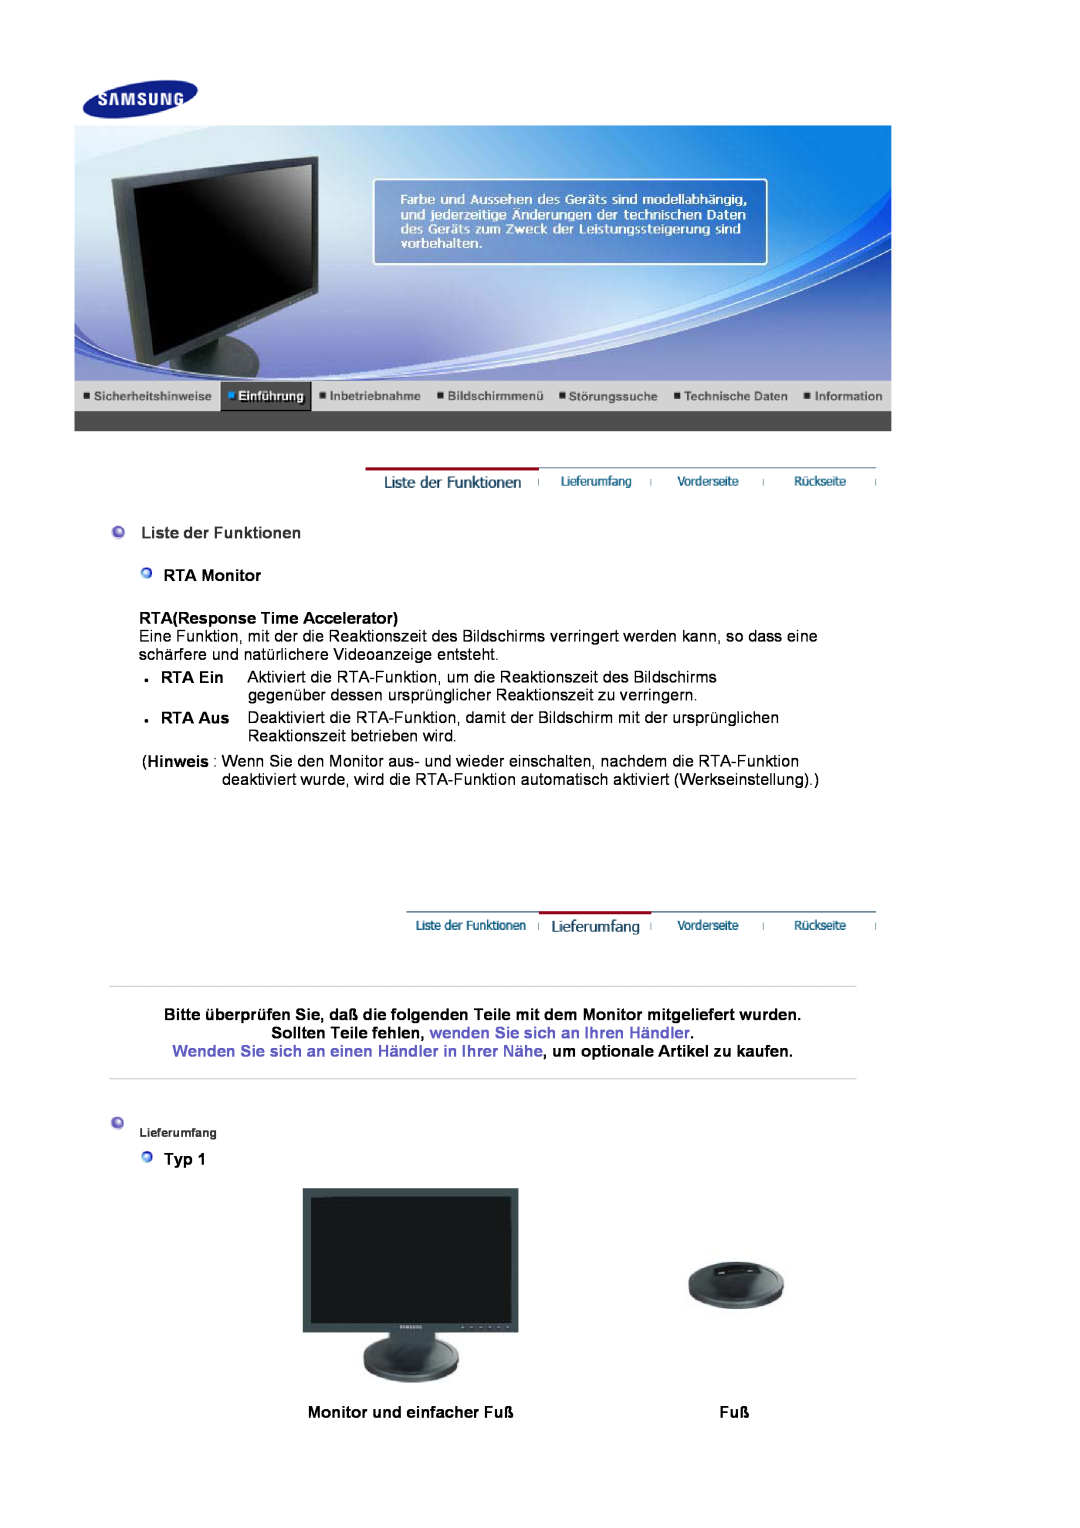 Samsung LS19HAWCSH/EDC manual RTA Monitor RTAResponse Time Accelerator, Monitor und einfacher Fuß, Liste der Funktionen 